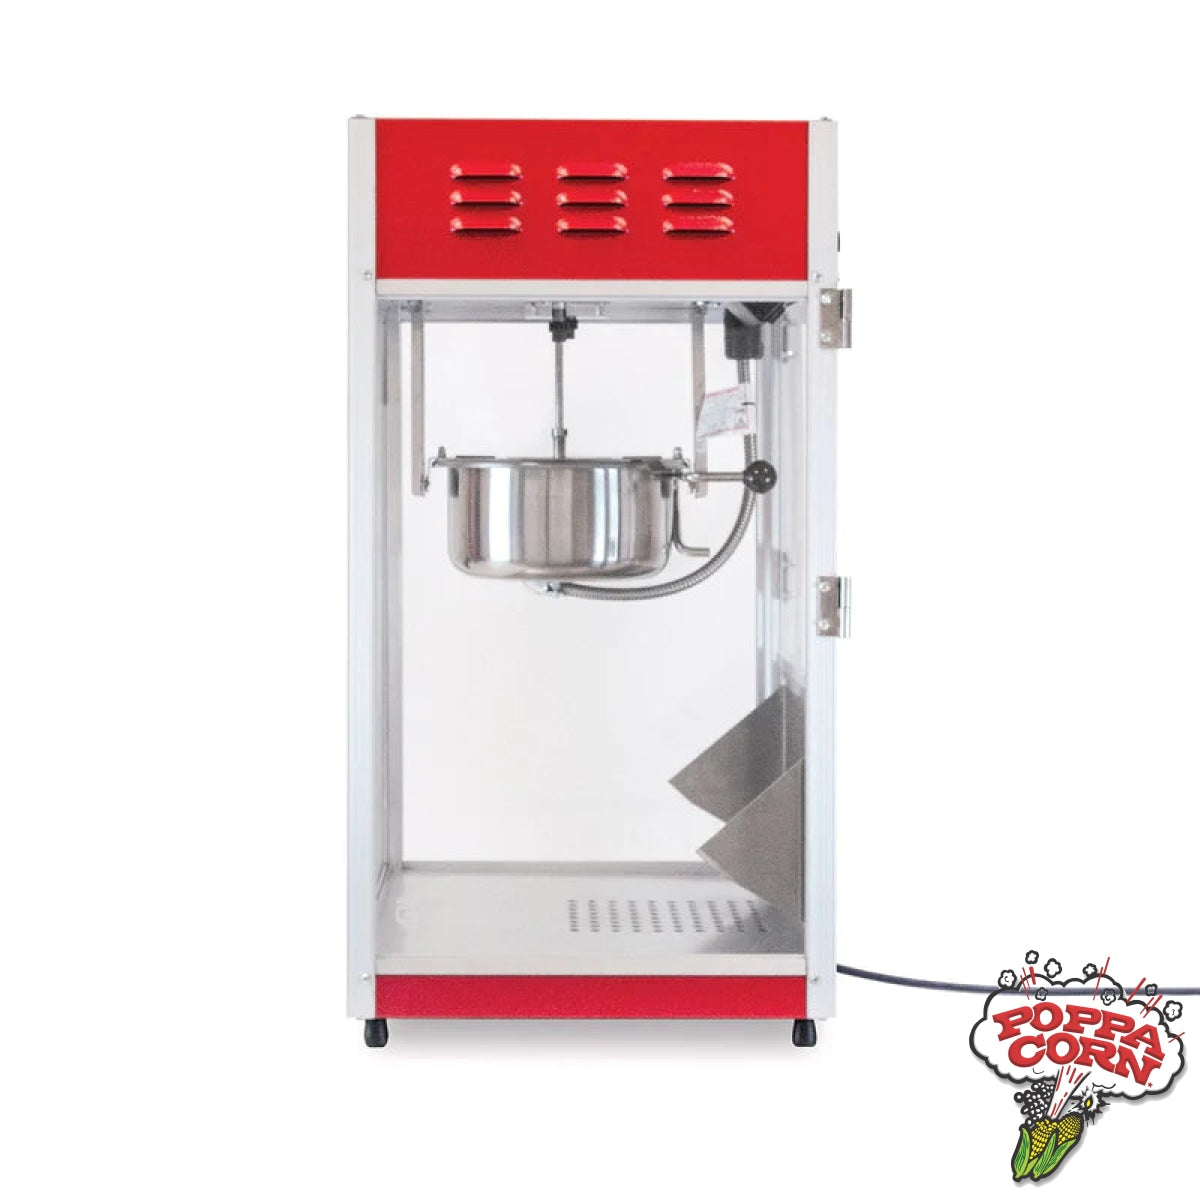 Econo 8 Popcorn Machine - GM2388U DEMO - Poppa Corn Corp